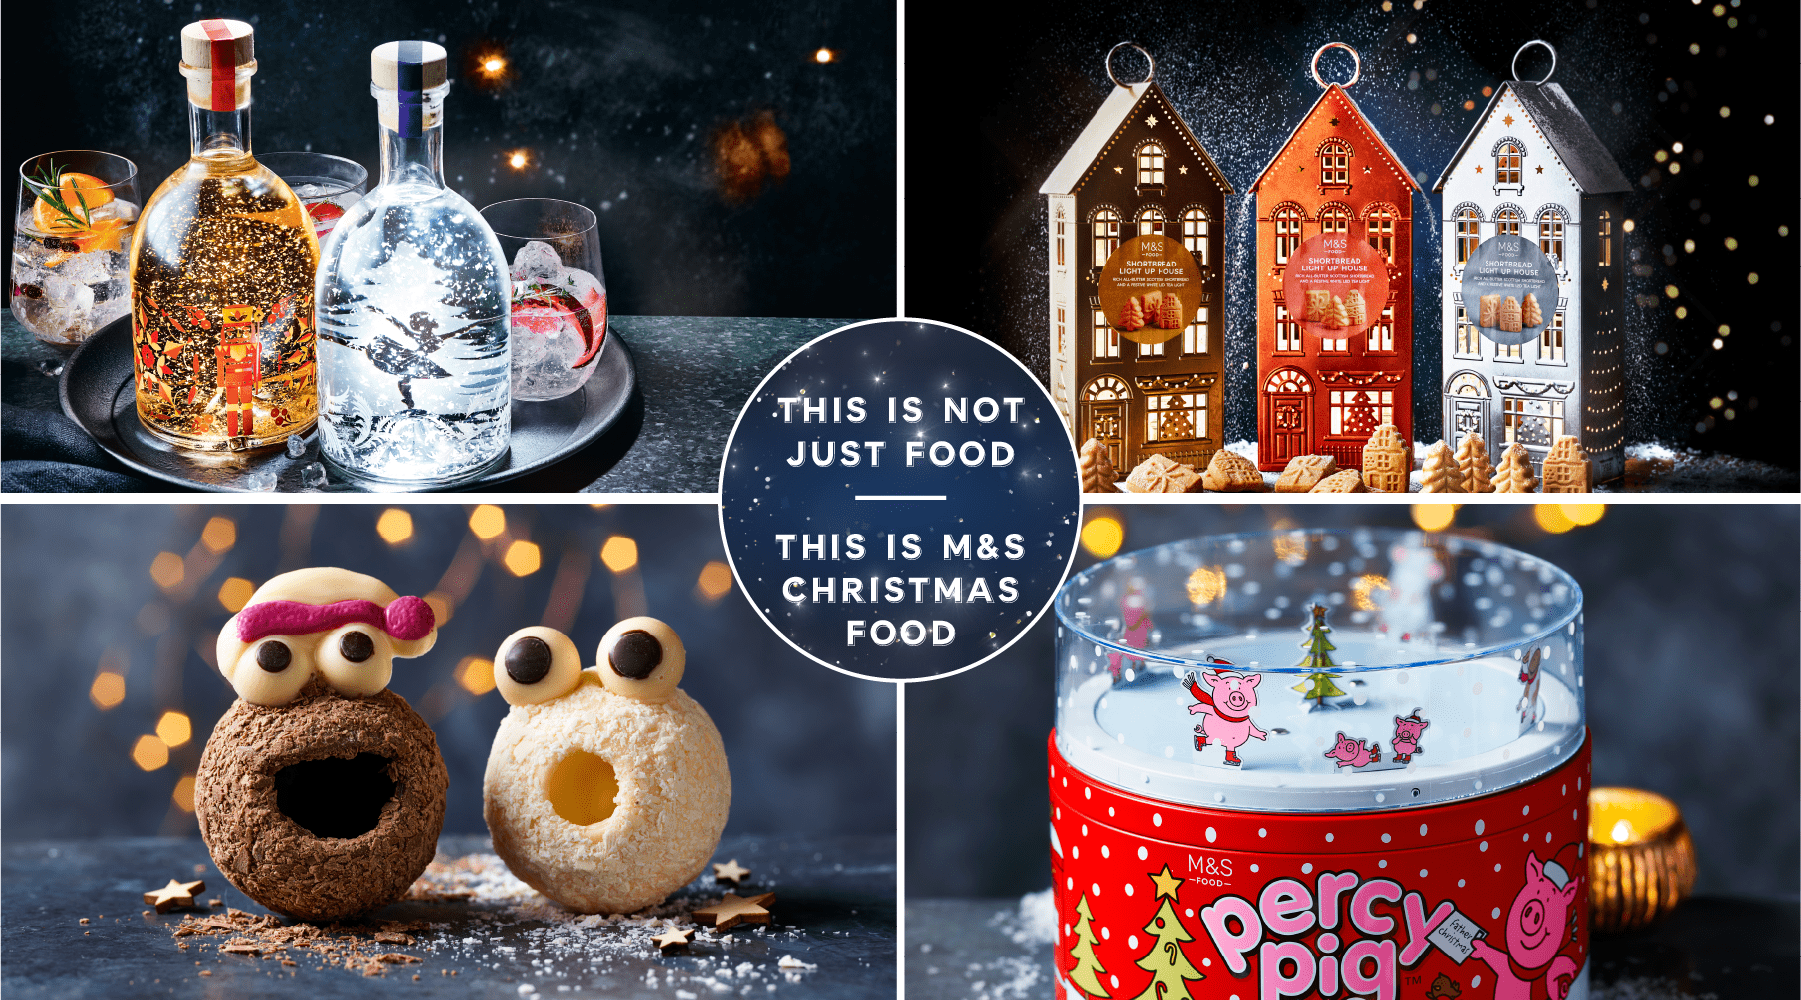 Στο τμήμα των M&S FOOD κατέφθασε η μαγεία και η λάμψη μαζί με όλα τα Must Haves των φετινών Χριστουγέννων